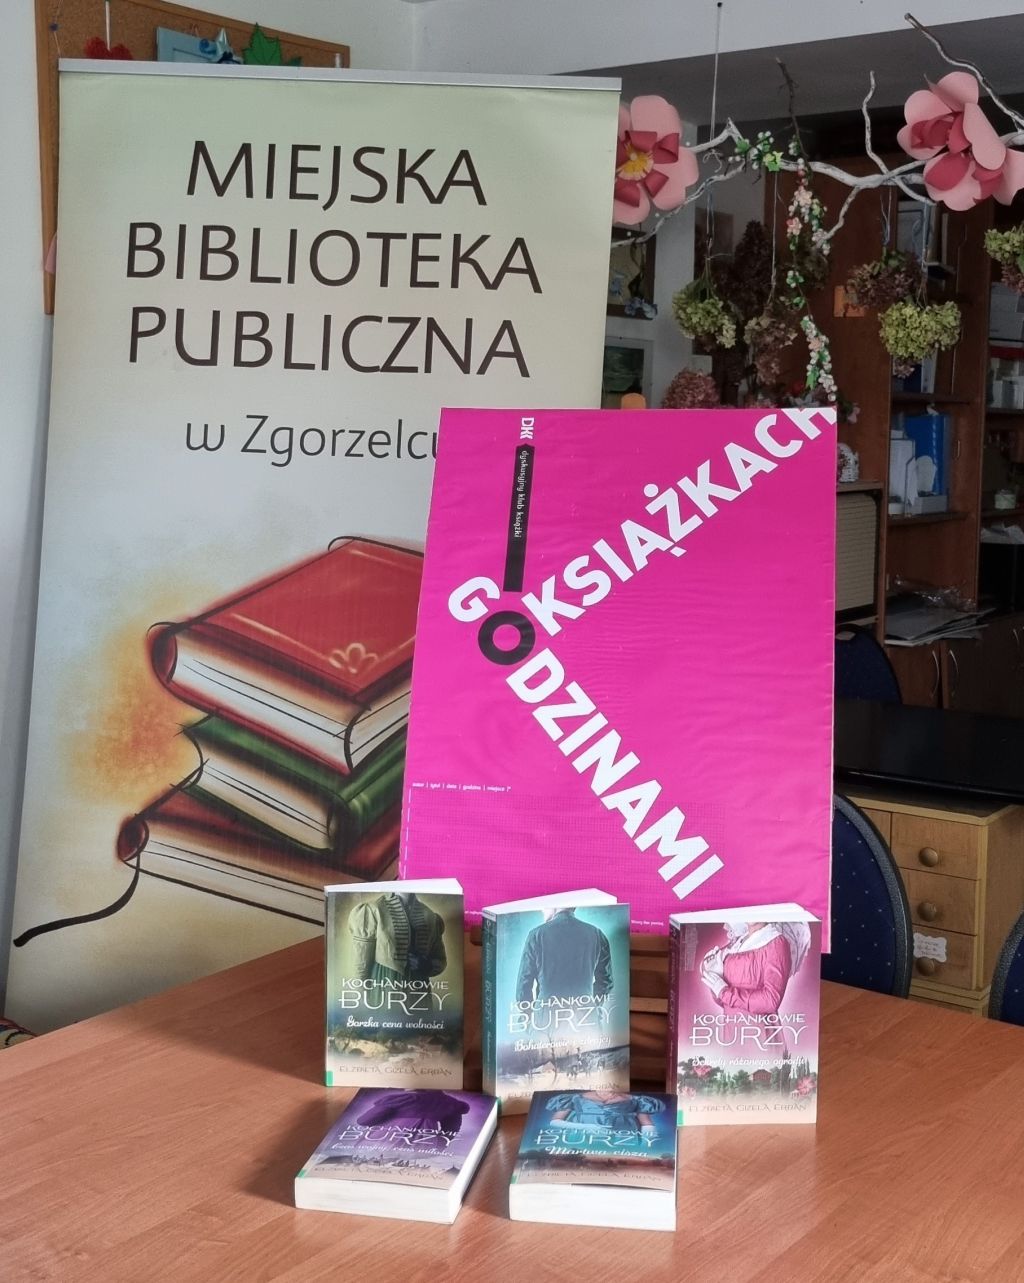 Wystawa książek pt. "Kochankowie Burzy" na spotkaniu Dyskusyjnego Klubu Książki.